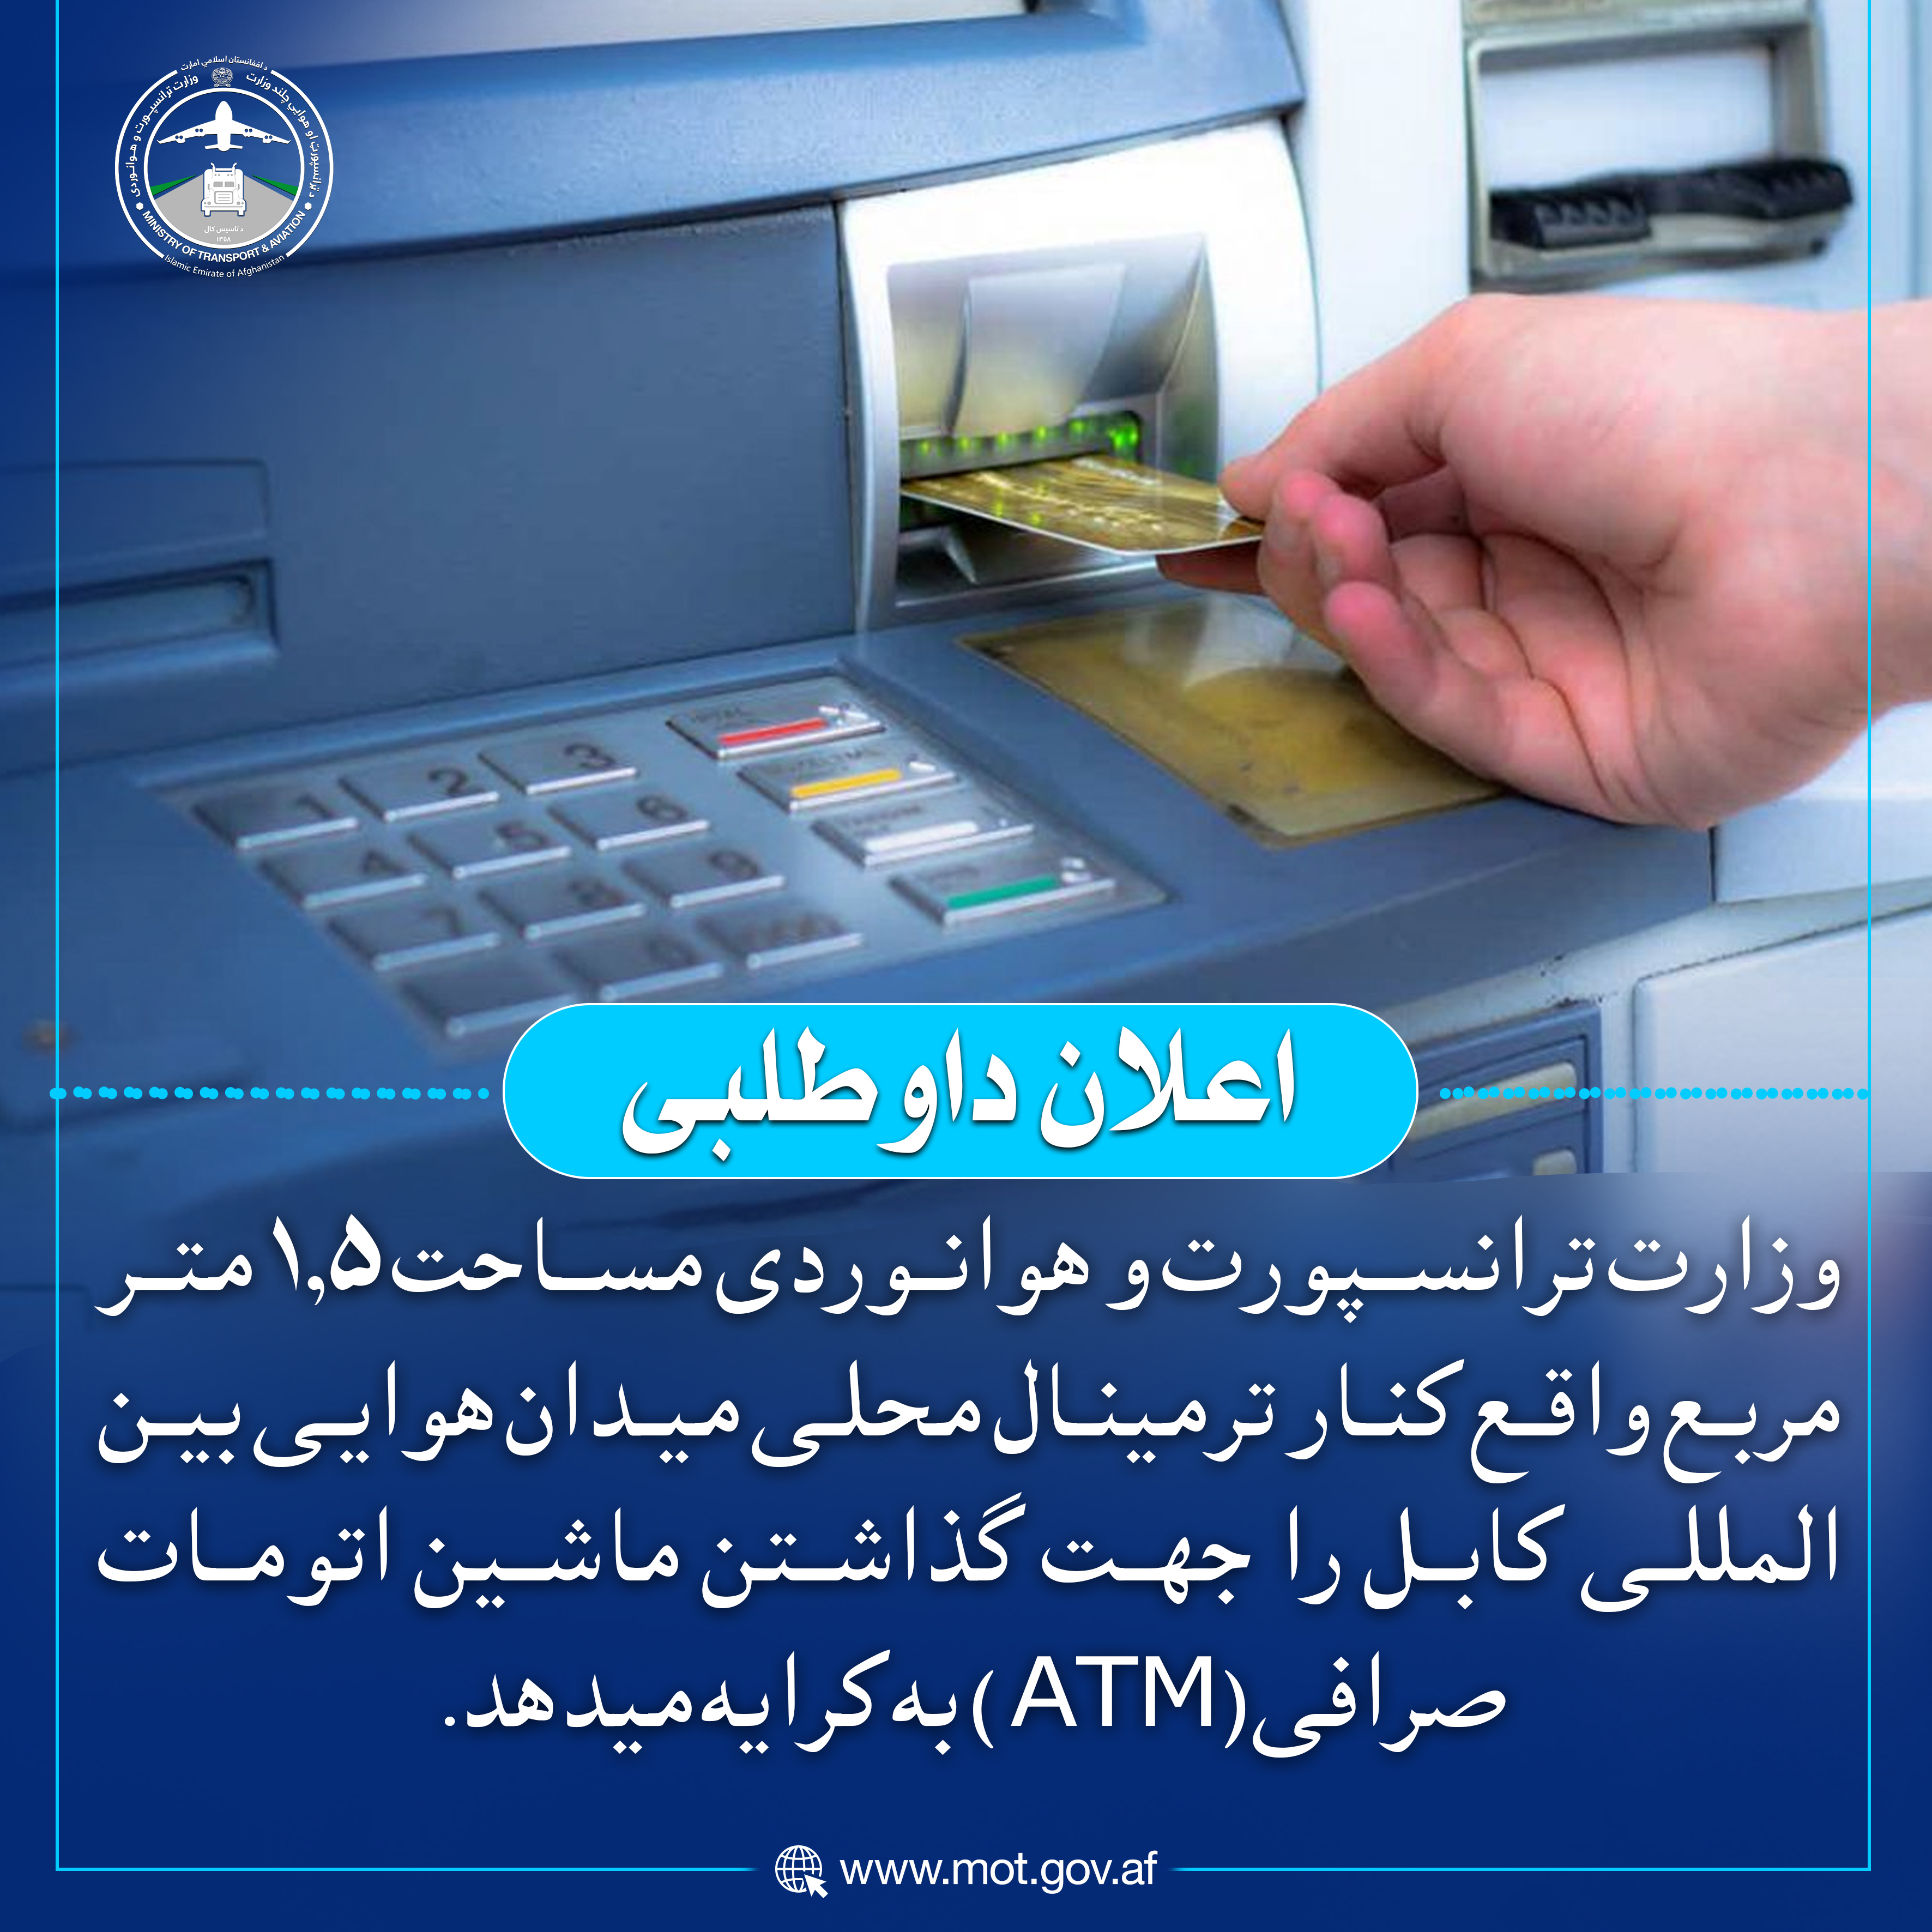 وزارت ترانسپورت و هوانوردی مساحت ۱.۵ متر مربع واقع کنار ترمینال محلی میدان هوایی بین المللی کابل را جهت گذاشتن ماشین اتومات صرافی (ATM) به کرایه میدهد.